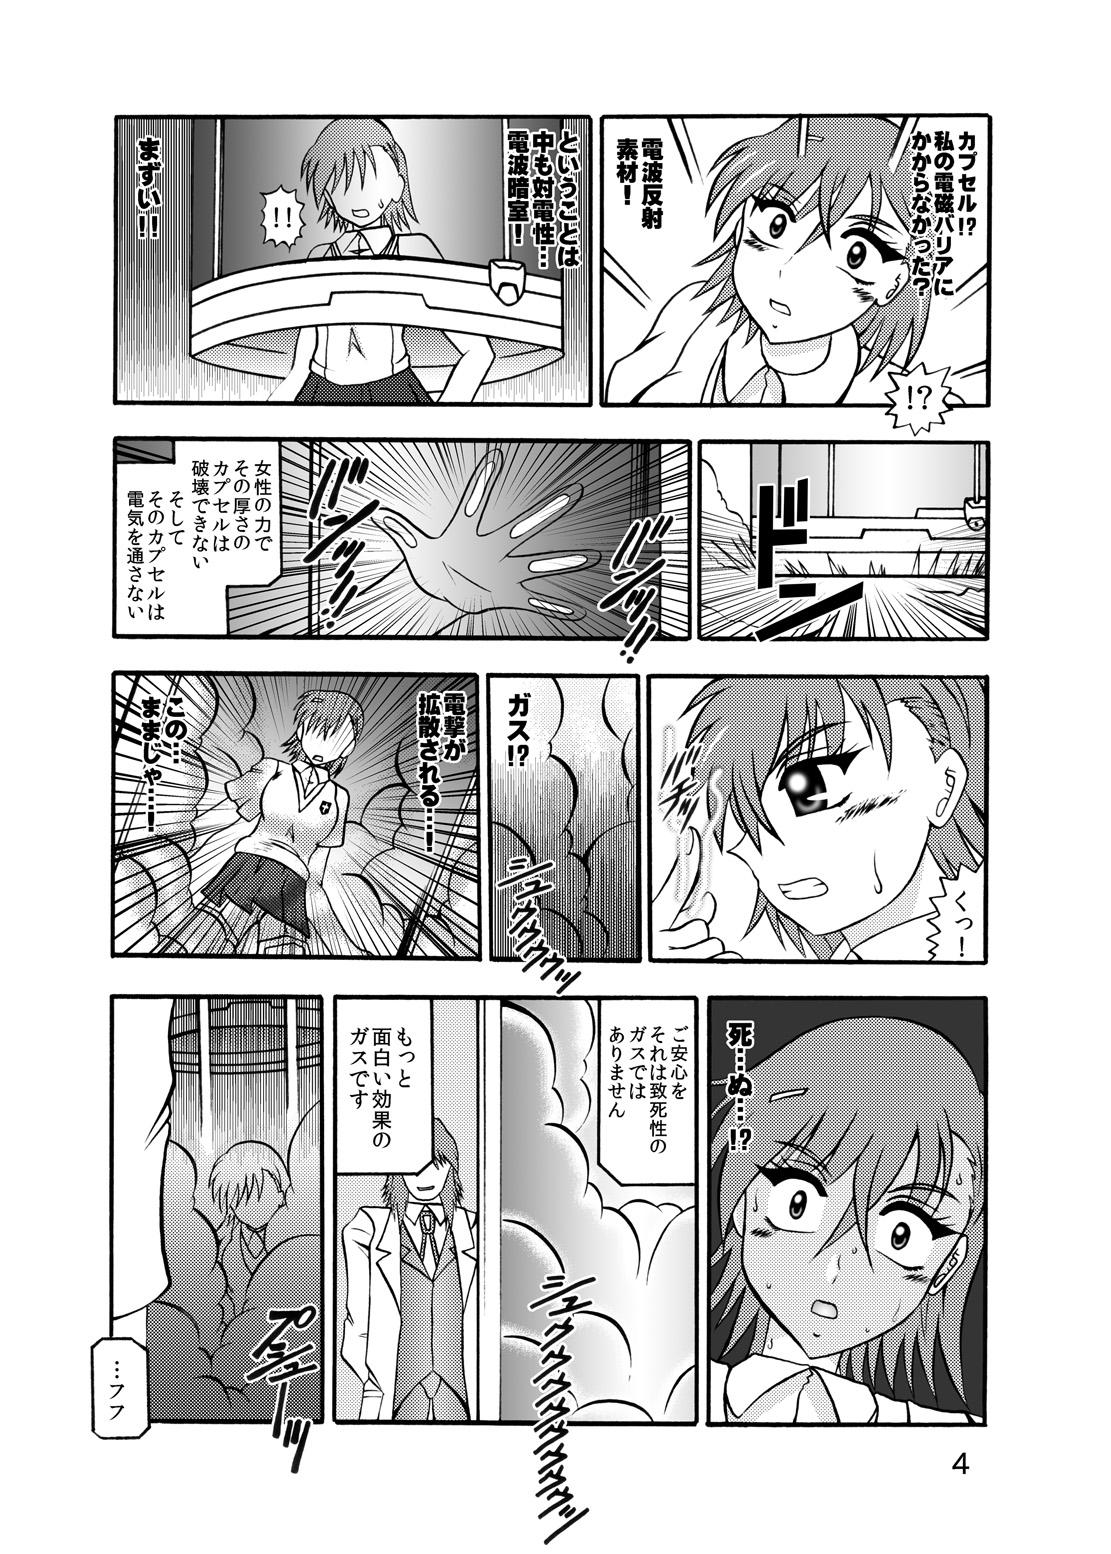 Yanks Featured Inyoku Kaizou: Misaka Mikoto - Toaru kagaku no railgun Work - Page 2